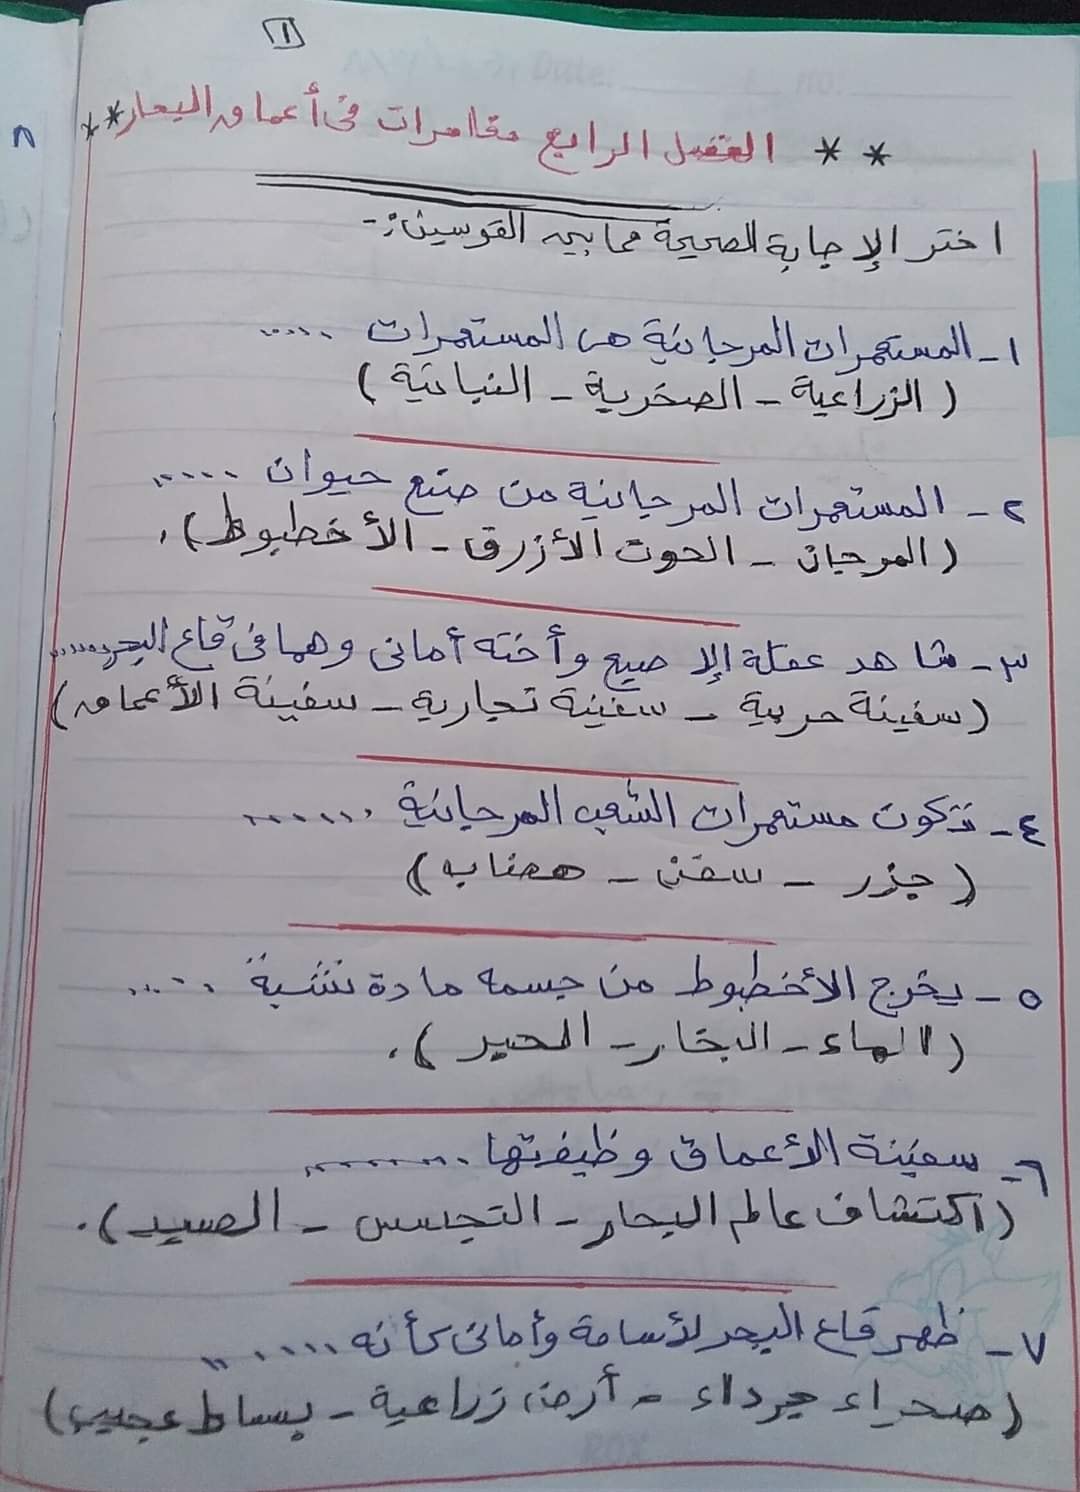  مراجعة منهج شهر مارس  لغة عربية (اختيار من متعدد) بالاجابات للصف الخامس الابتدائى الترم الثانى 2021 1